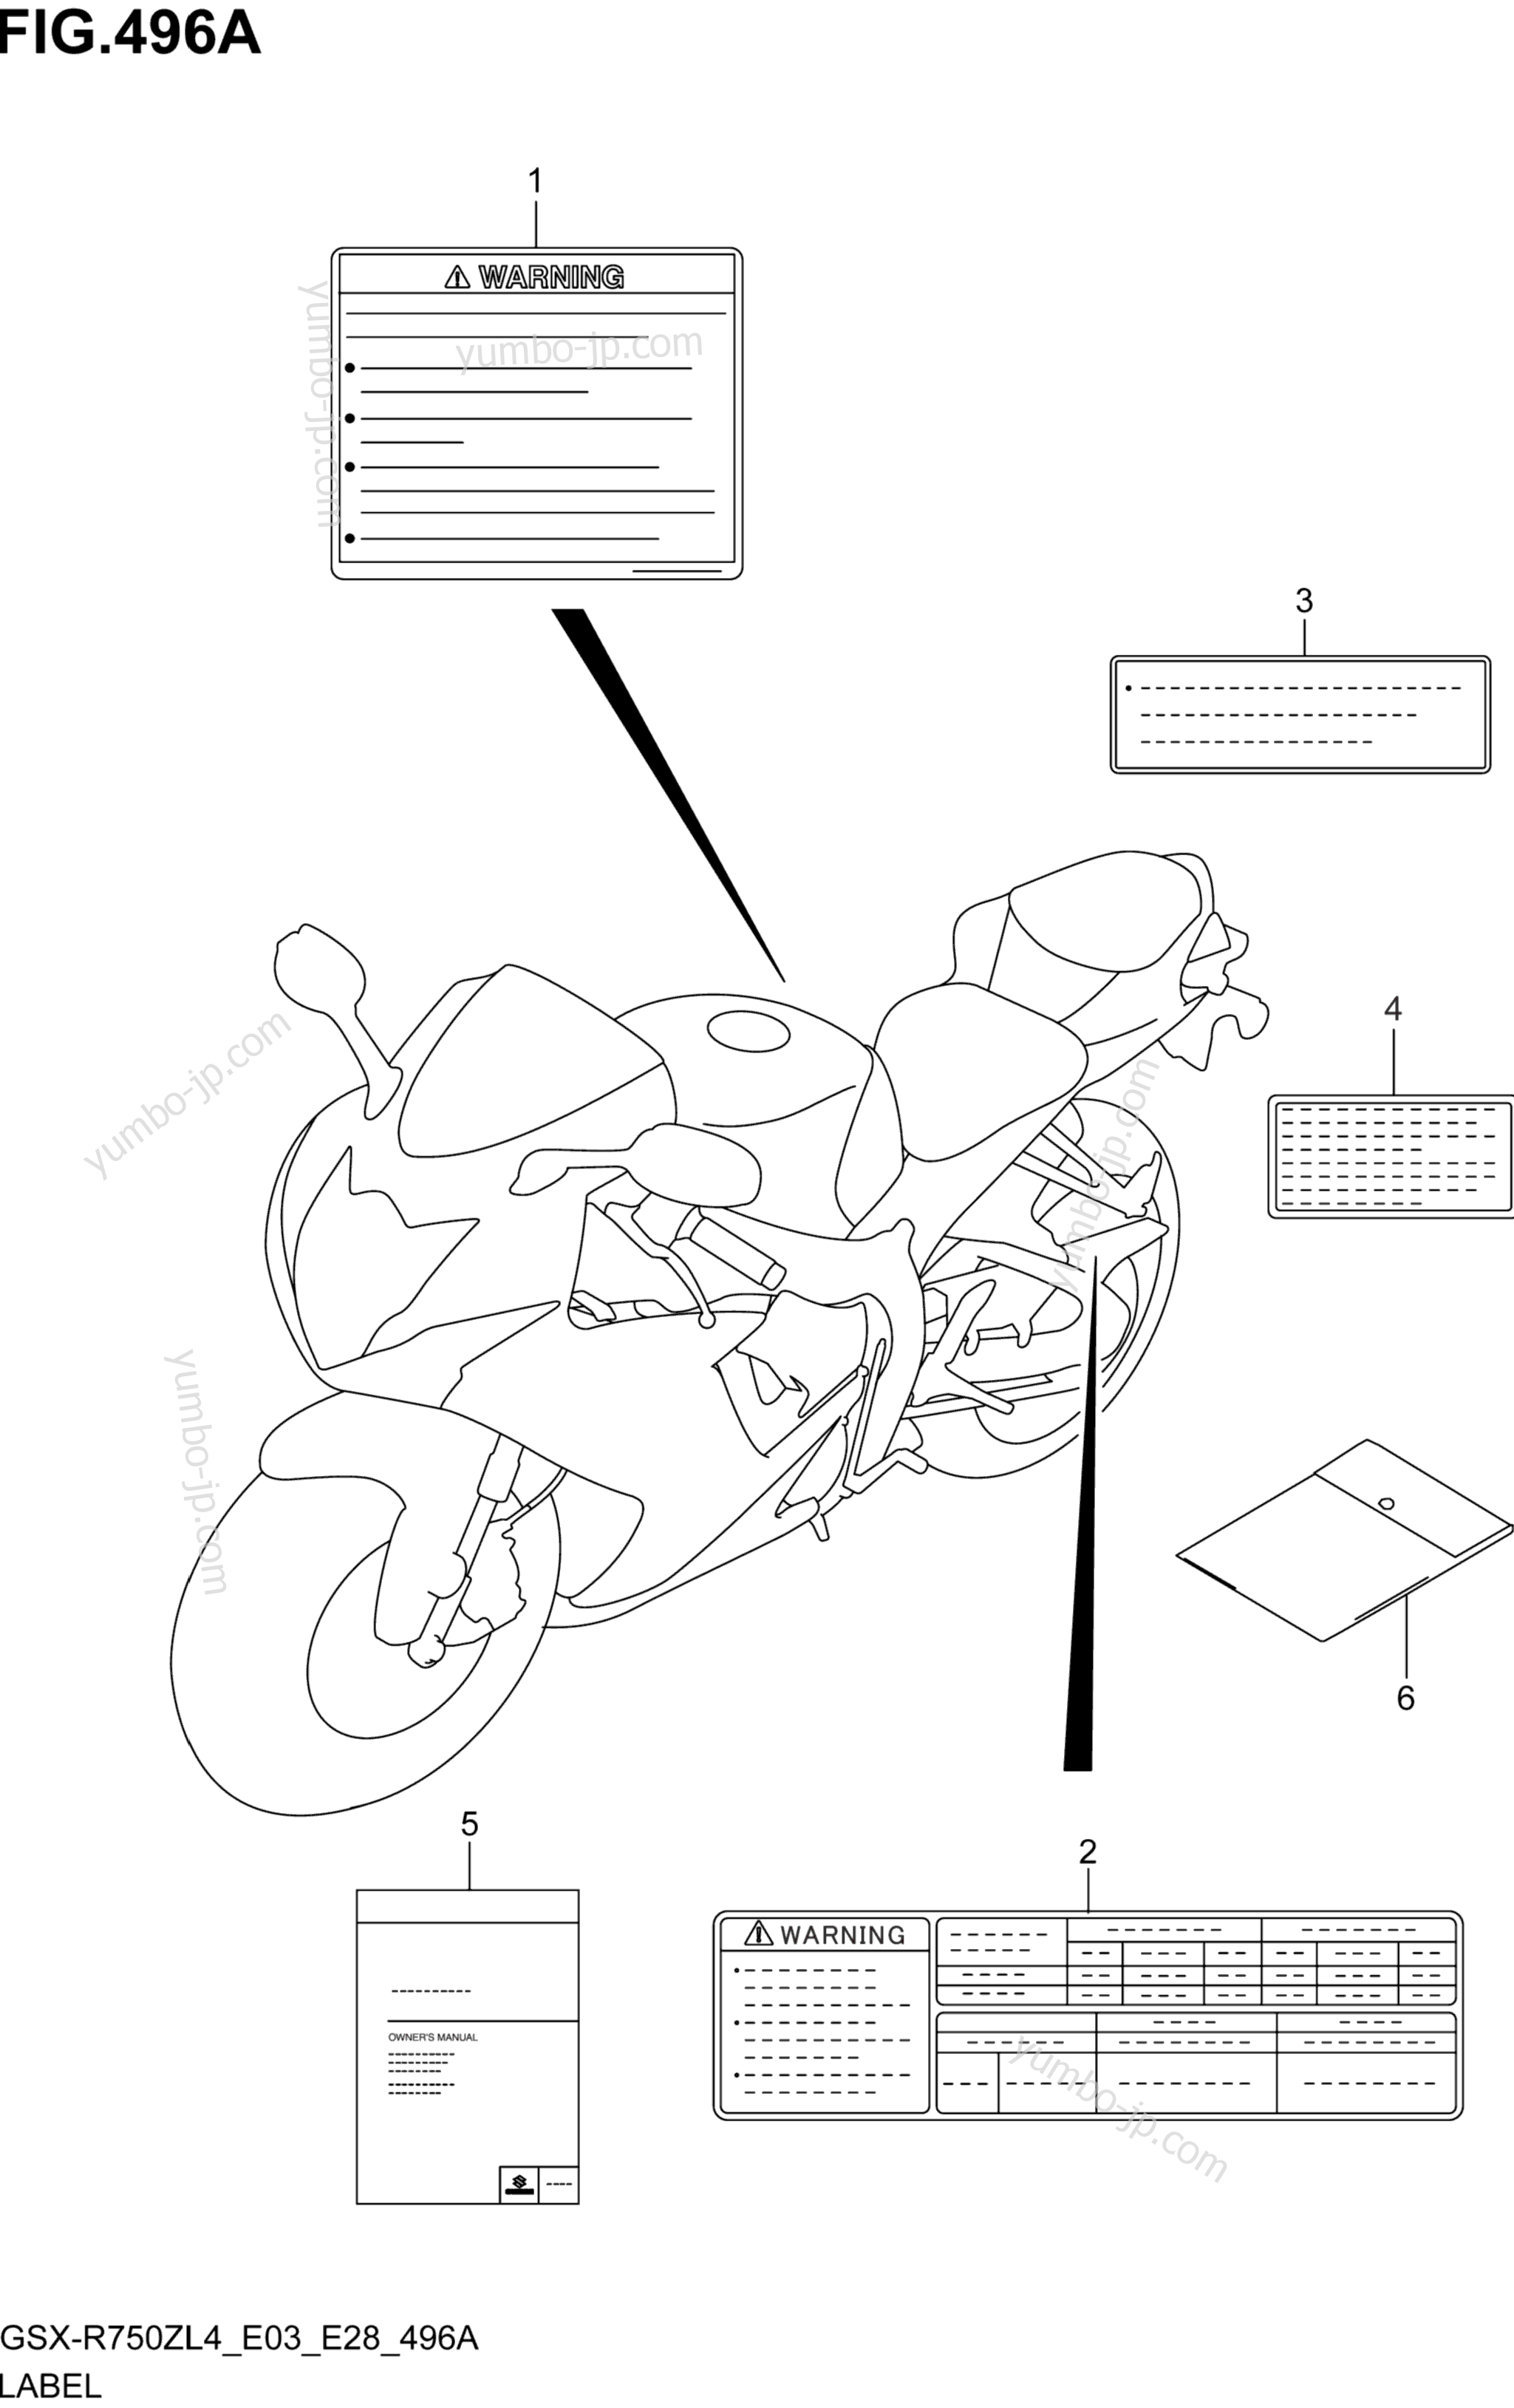 LABEL (GSX-R750ZL4 E03) for motorcycles SUZUKI GSX-R750Z 2014 year